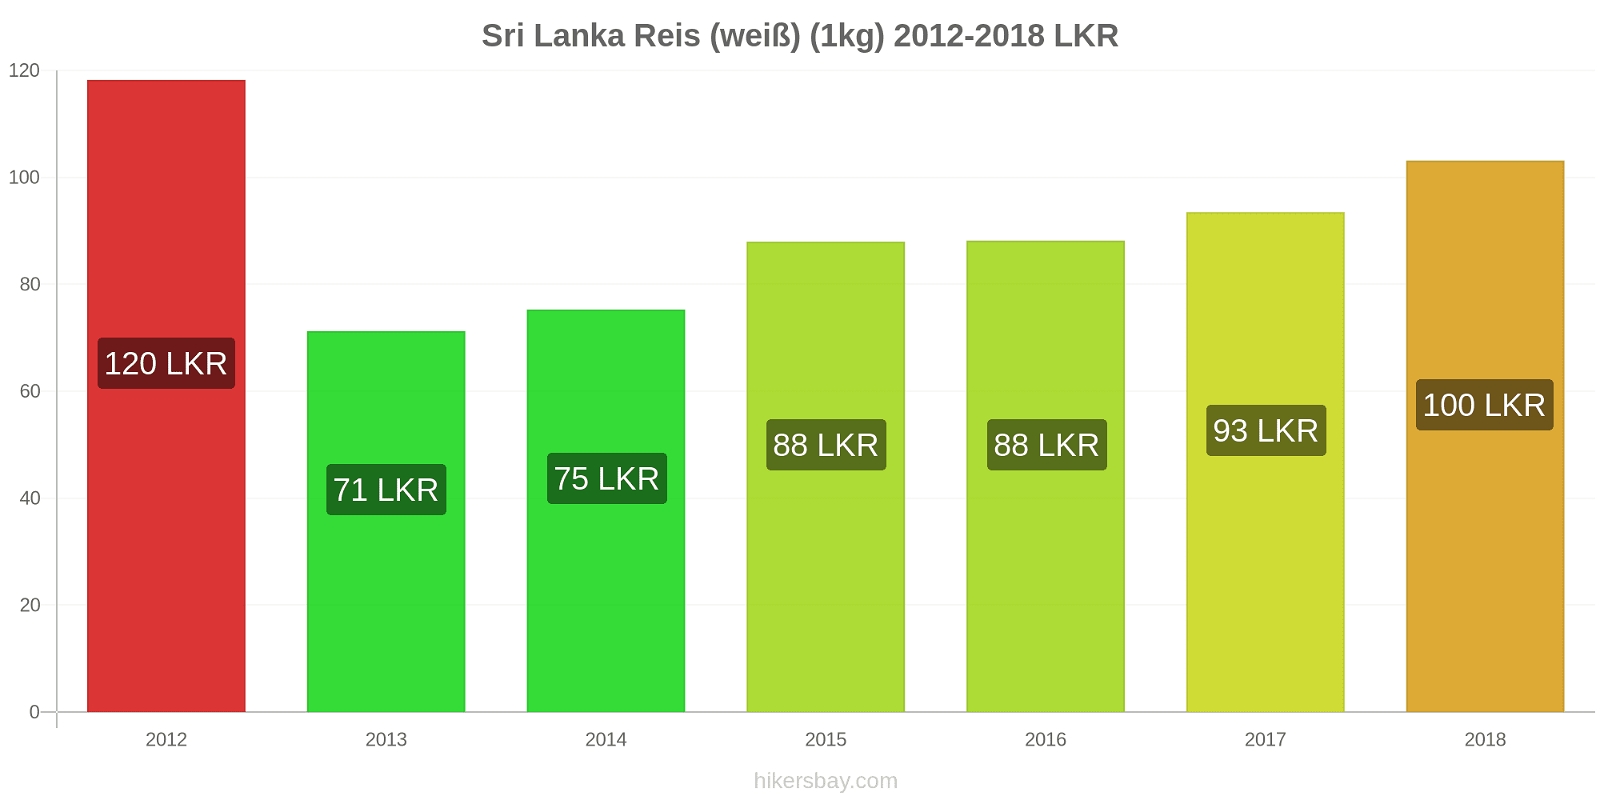 Sri Lanka Preisänderungen Reis (weiß) (1kg) hikersbay.com